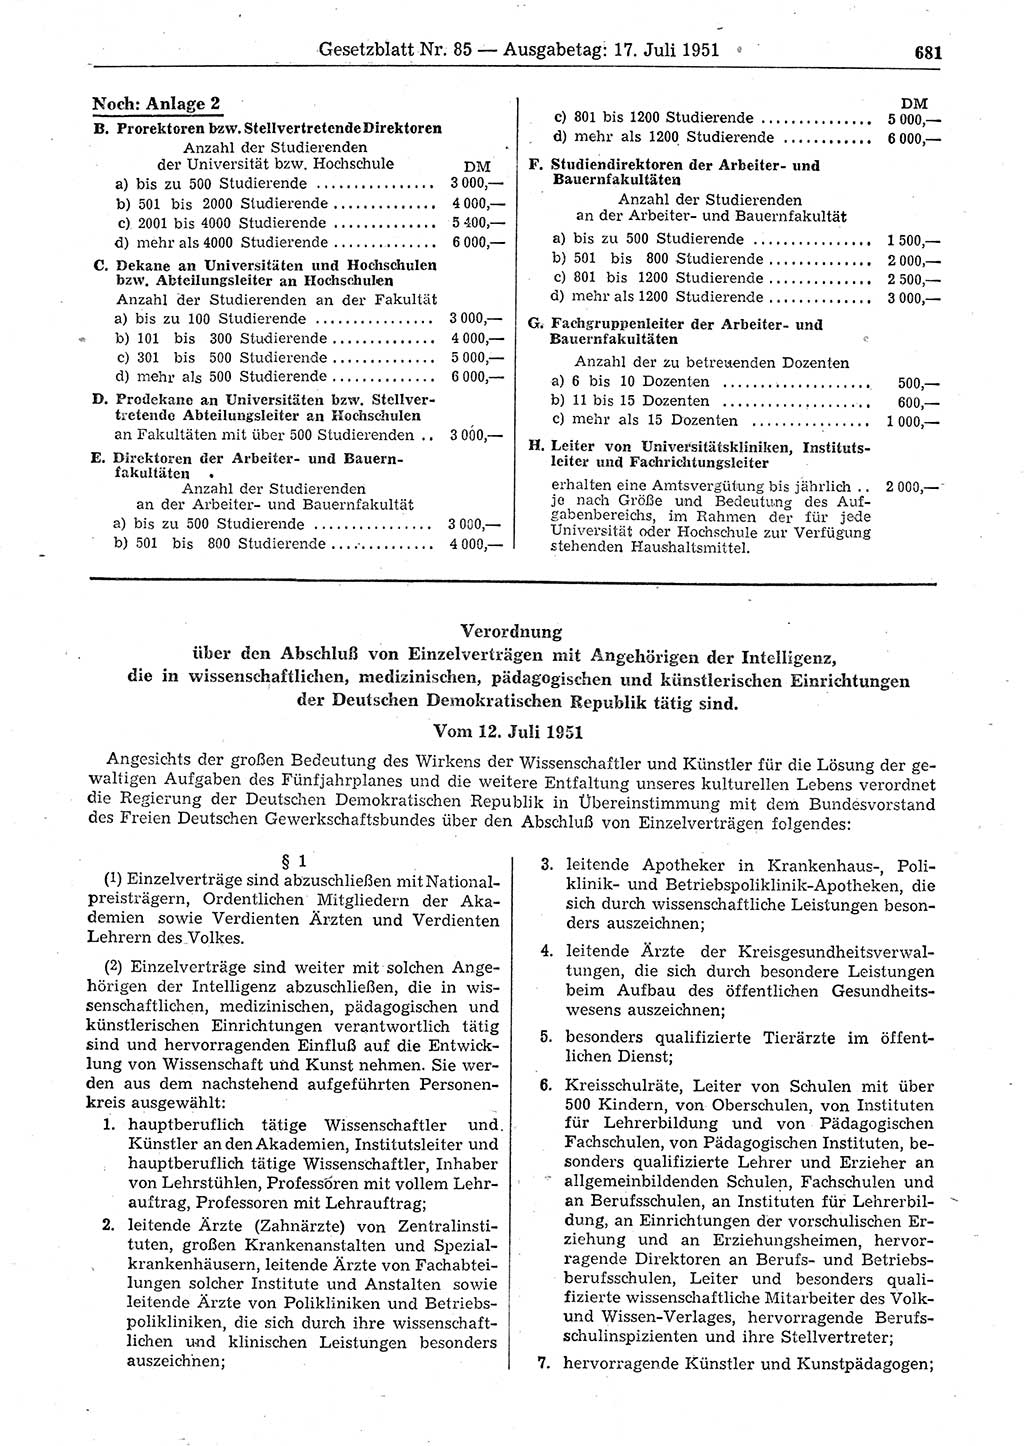 Gesetzblatt (GBl.) der Deutschen Demokratischen Republik (DDR) 1951, Seite 681 (GBl. DDR 1951, S. 681)